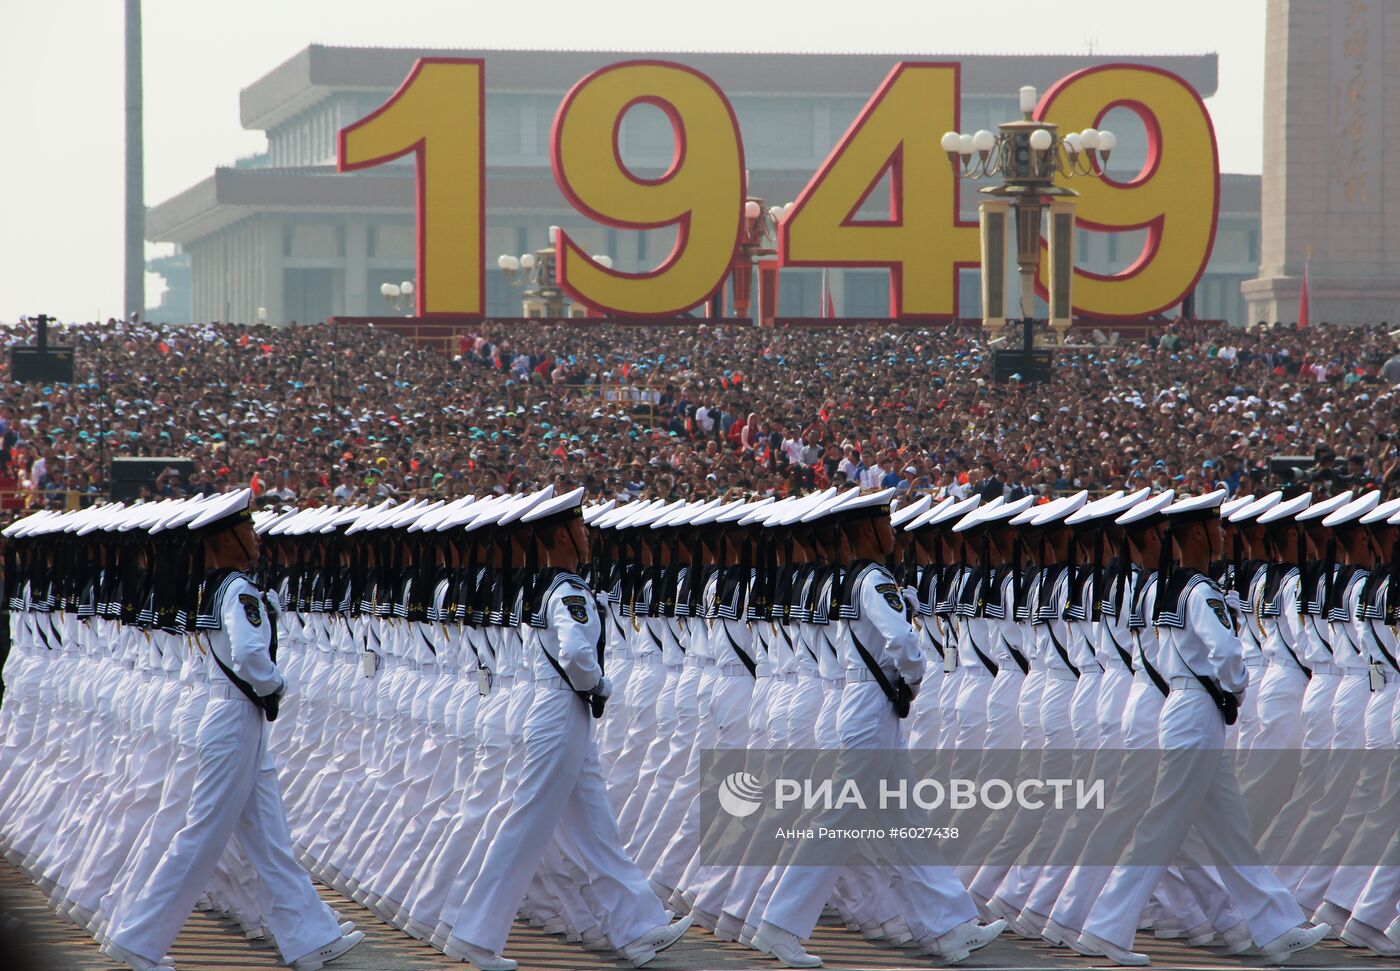 Праздничные мероприятия в Пекине в честь 70-й годовщины образования КНР